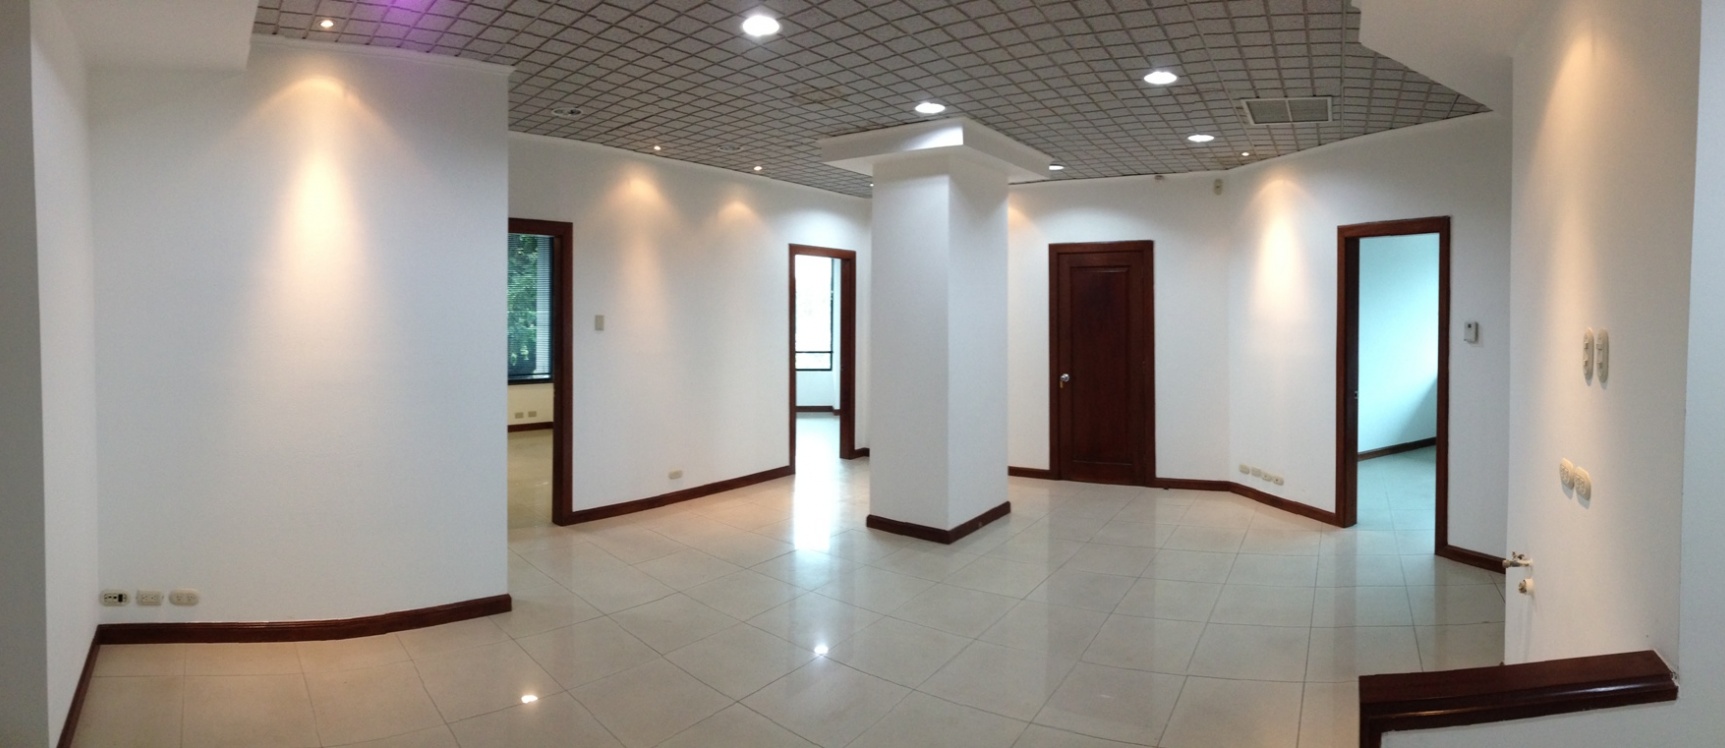 GeoBienes - Local comercial y oficina en alquiler en Guayaquil - Plusvalia Guayaquil Casas de venta y alquiler Inmobiliaria Ecuador